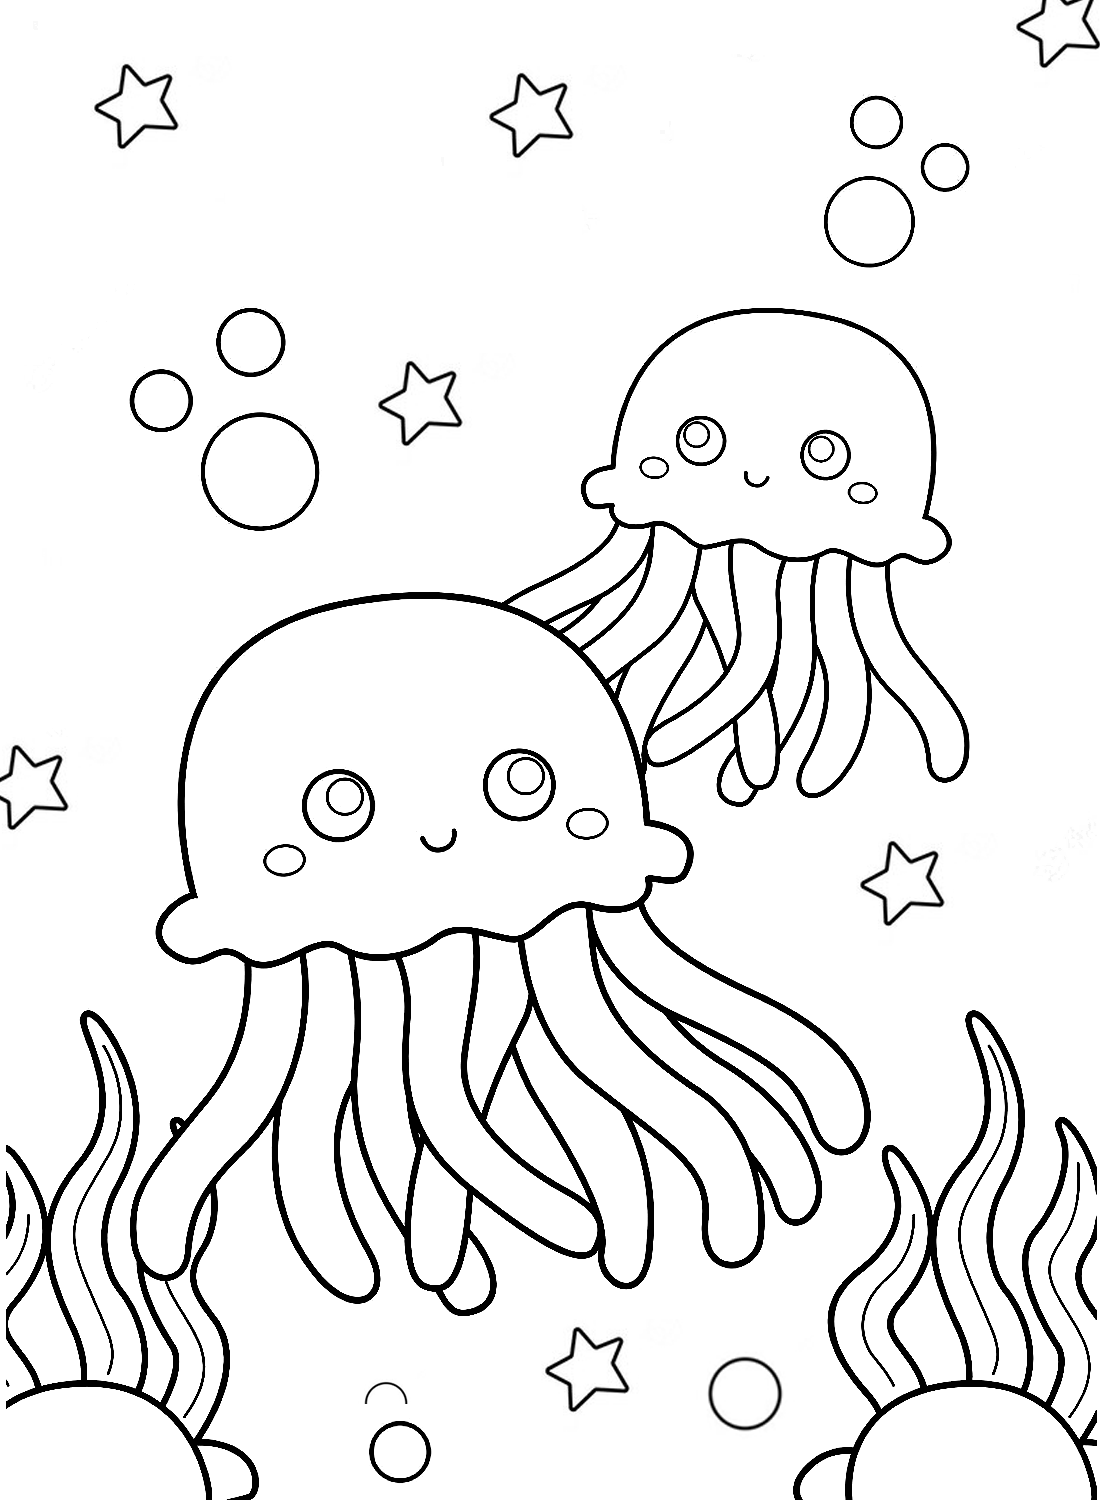 Pagina da colorare di molte meduse